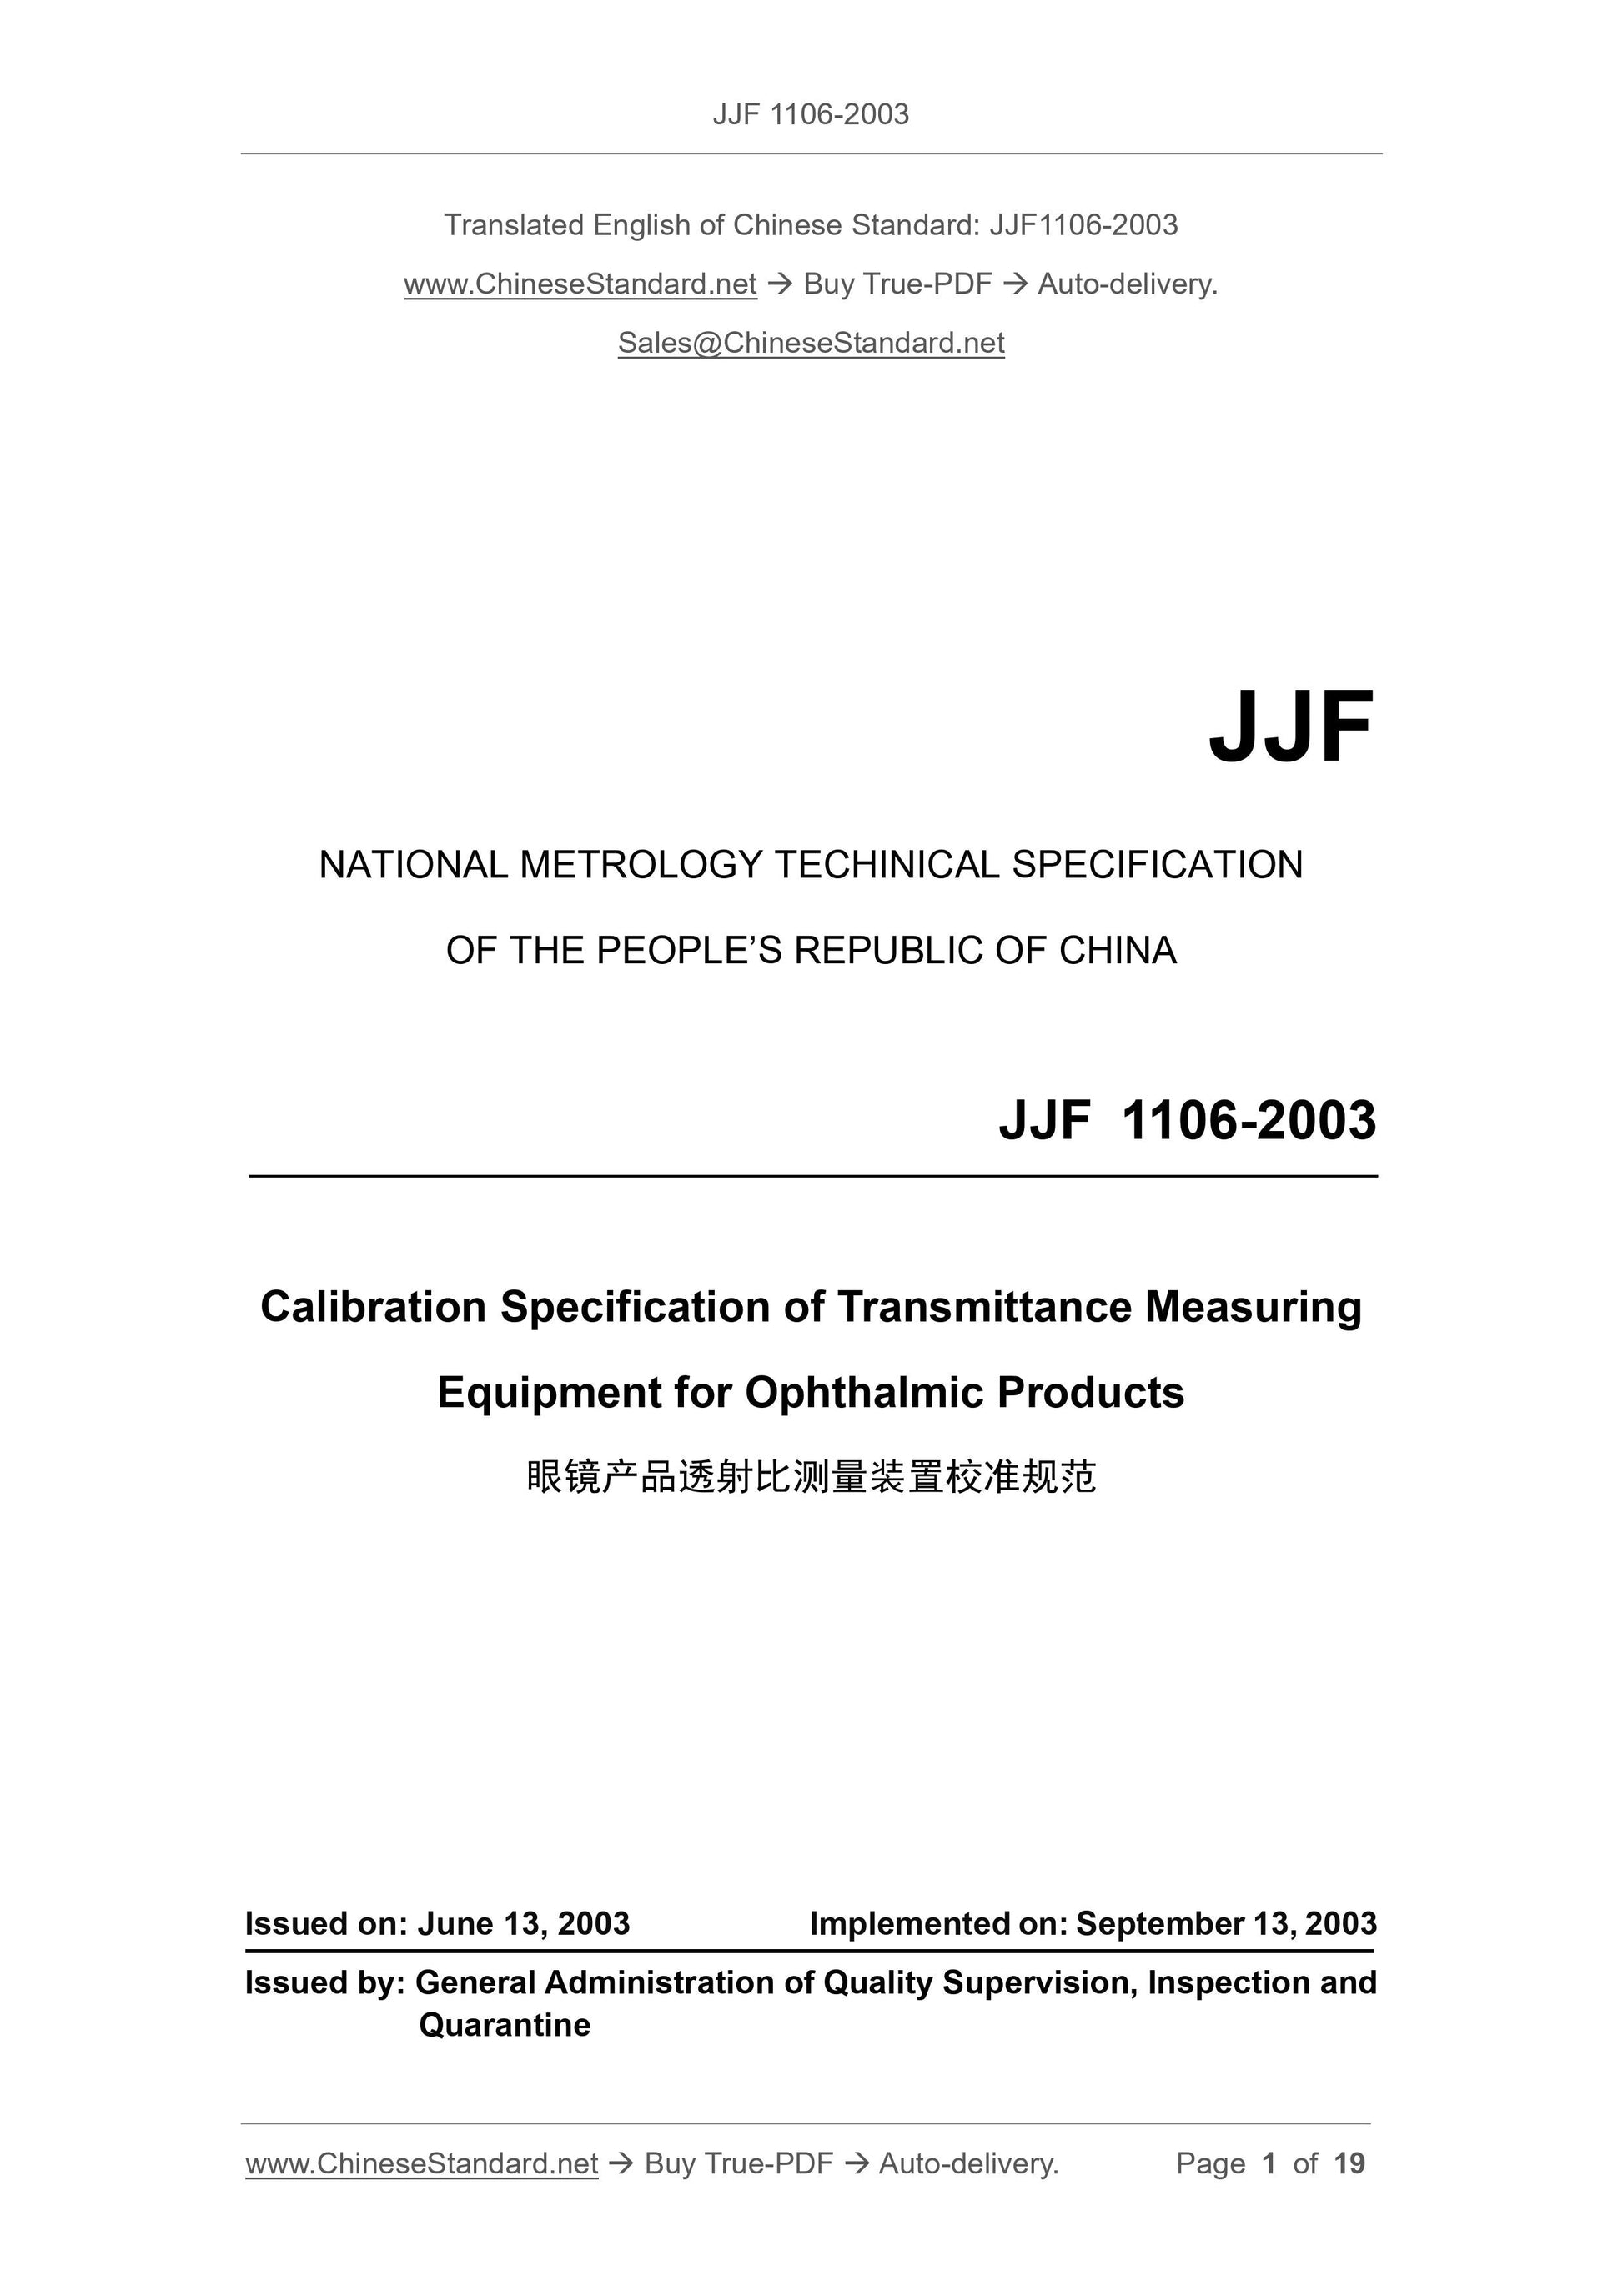 JJF 1106-2003 Page 1